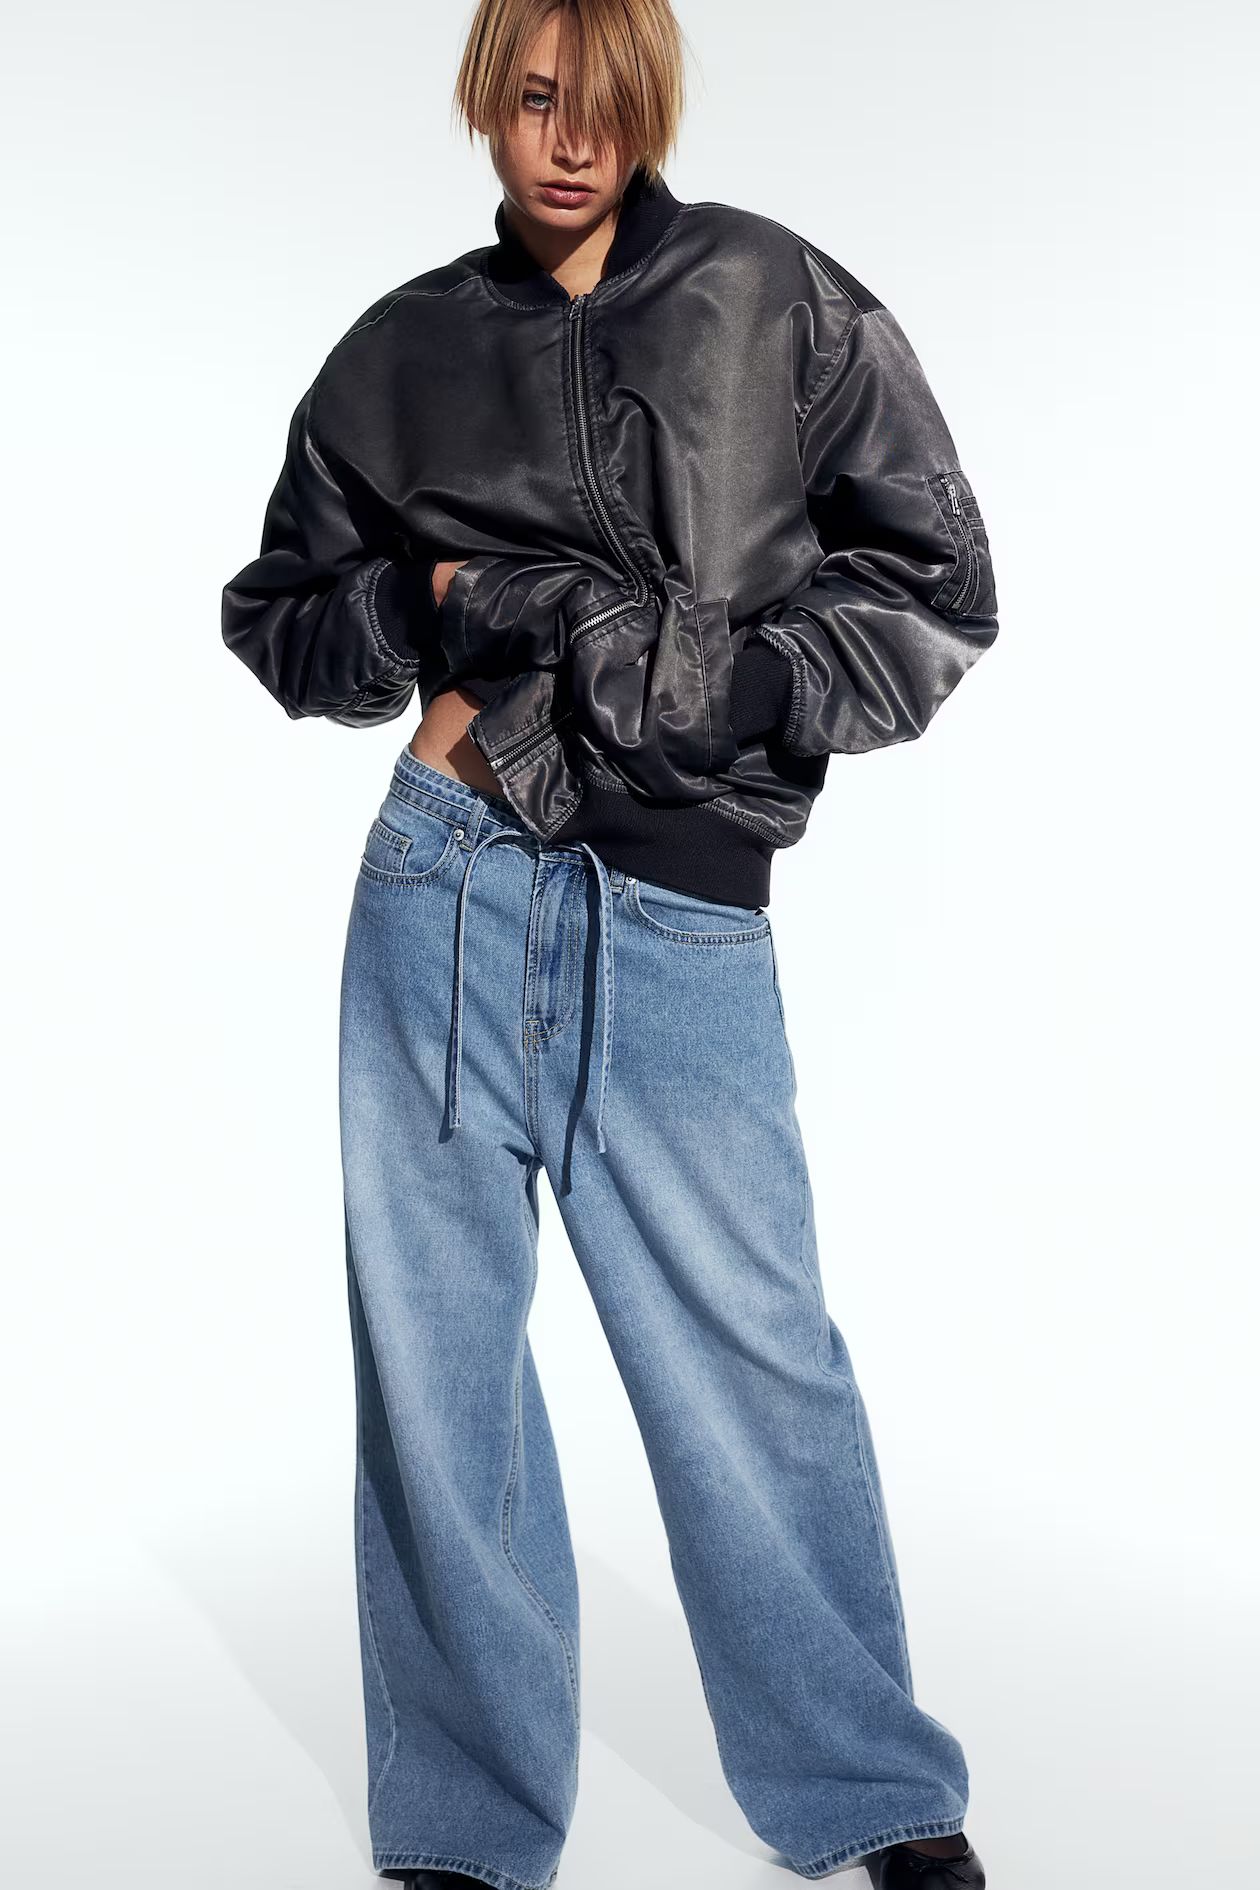 90s Baggy Regular Jeans - Helles Denimblau - Ladies | H&M AT | H&M (DE, AT, CH, NL, FI)